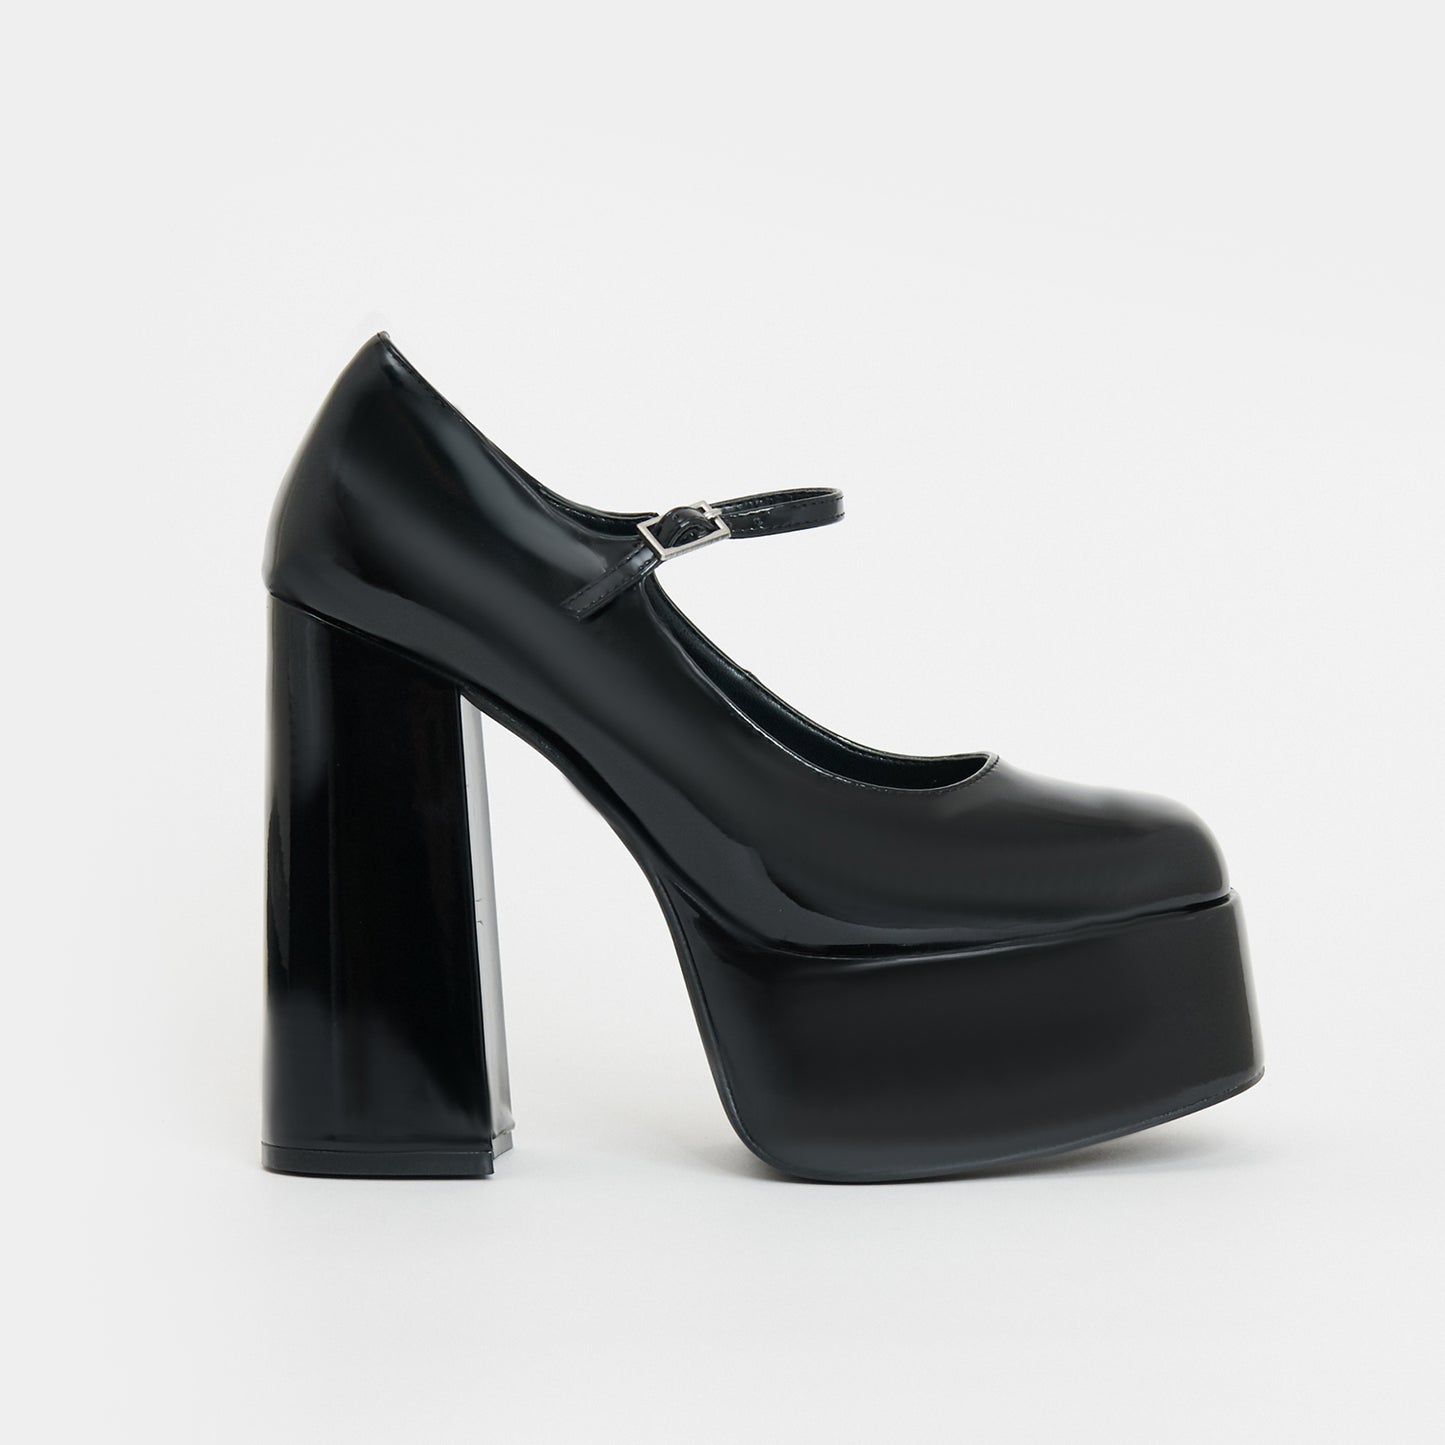 Darkbloom Black Patent Platform Heels - Shoes - KOI Footwear - Black - Side View